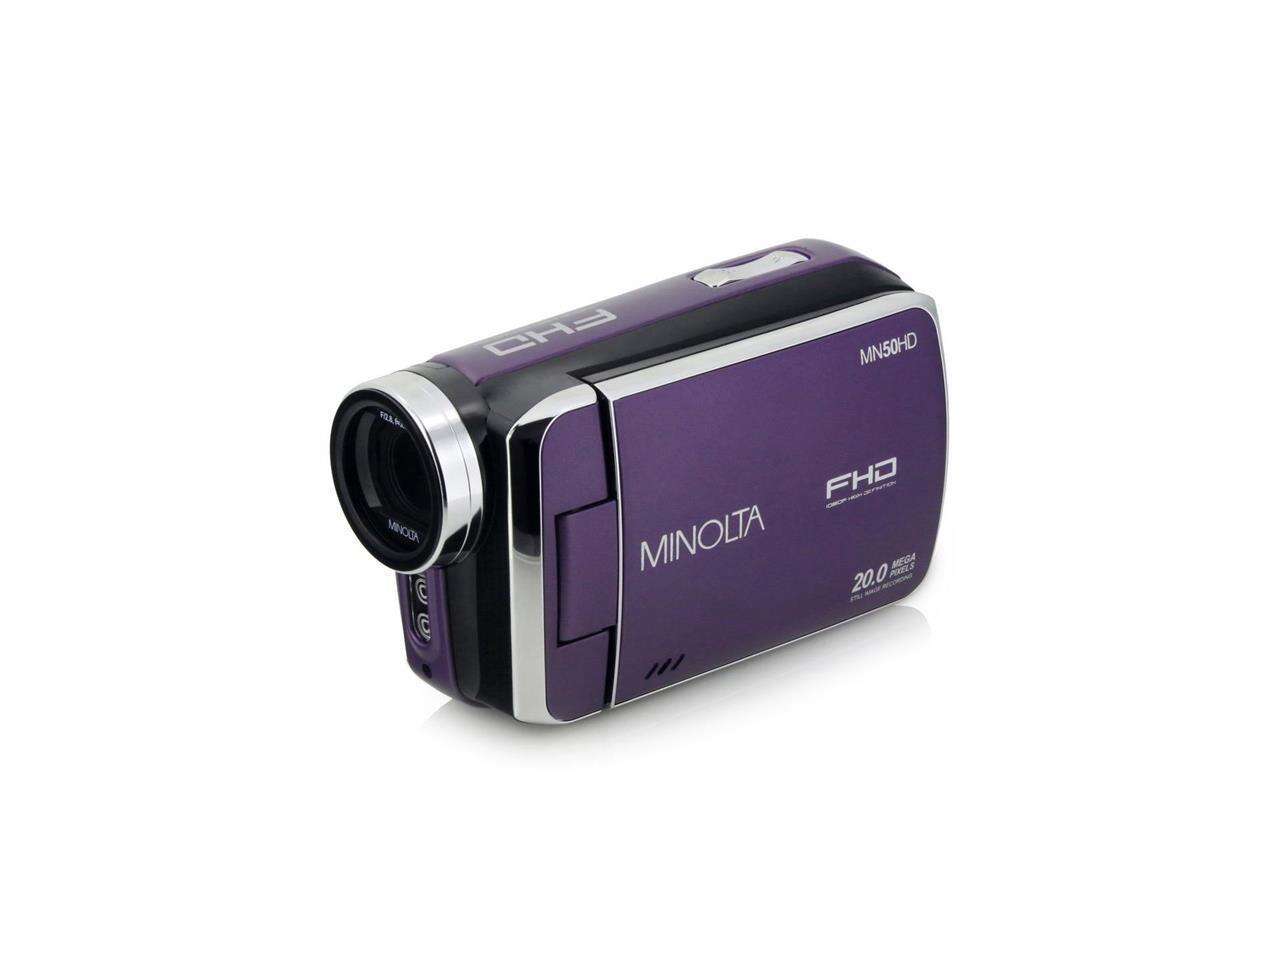 Minolta MN50HD 1080p Full HD 20MP Digital Camcorder, Purple #MN50HD-P